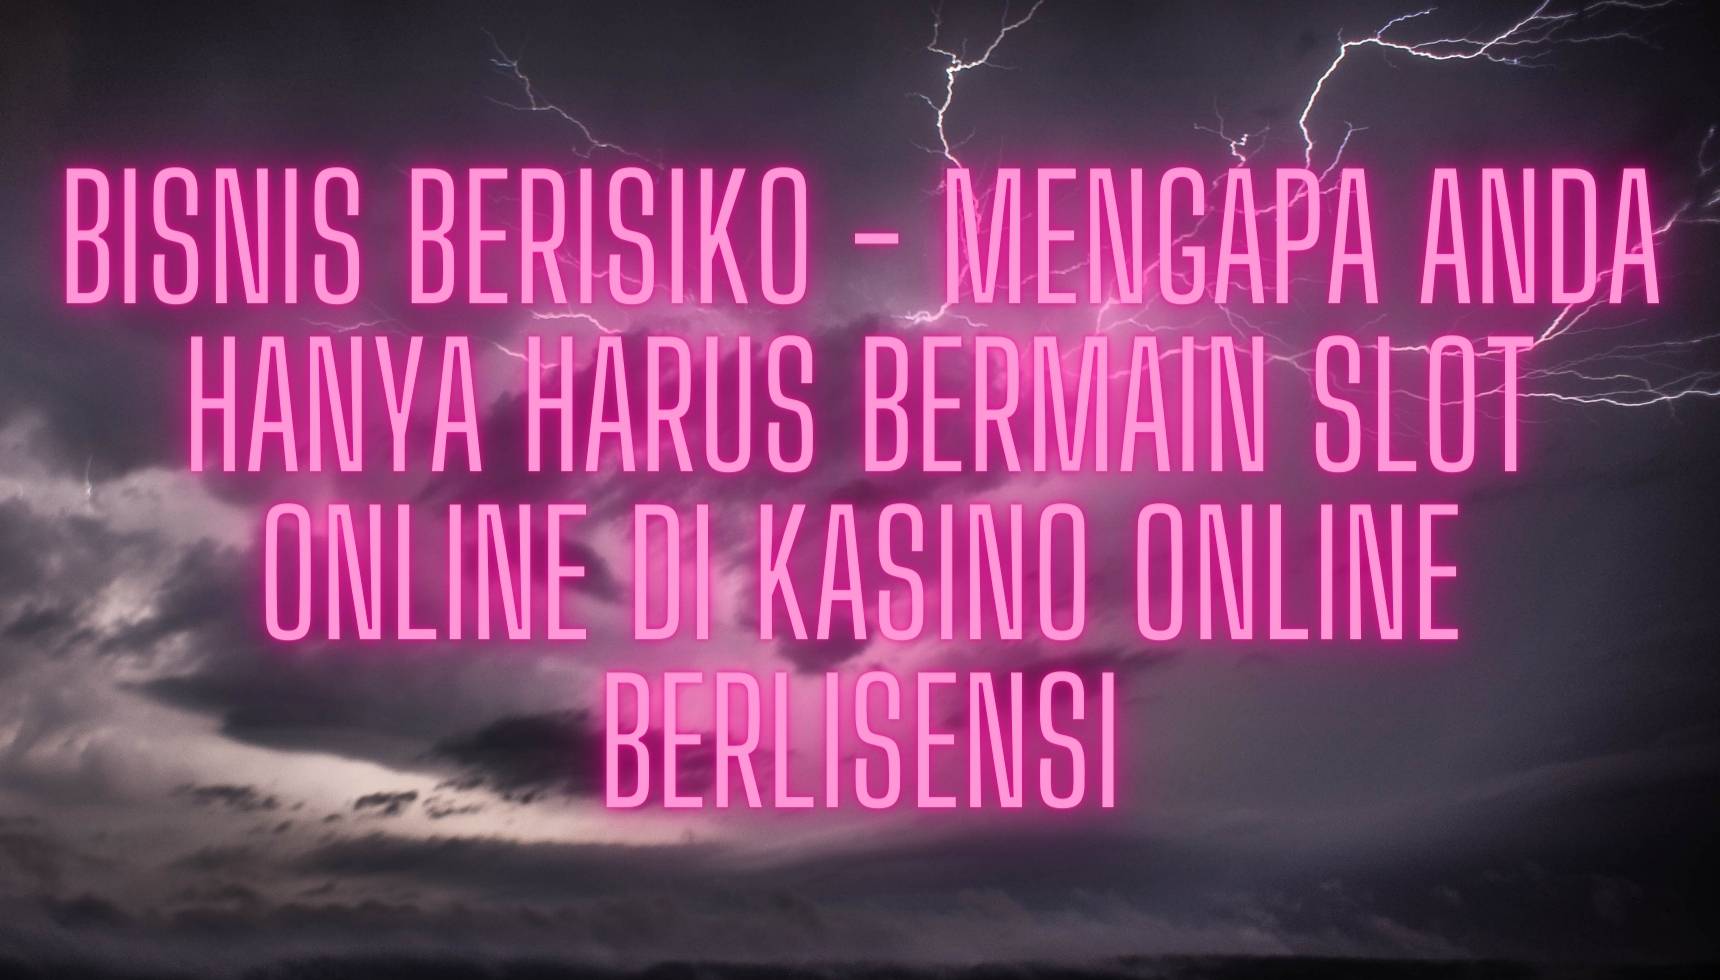 Bisnis Berisiko - Mengapa Anda Hanya Harus Bermain Slot Online di Kasino Online Berlisensi